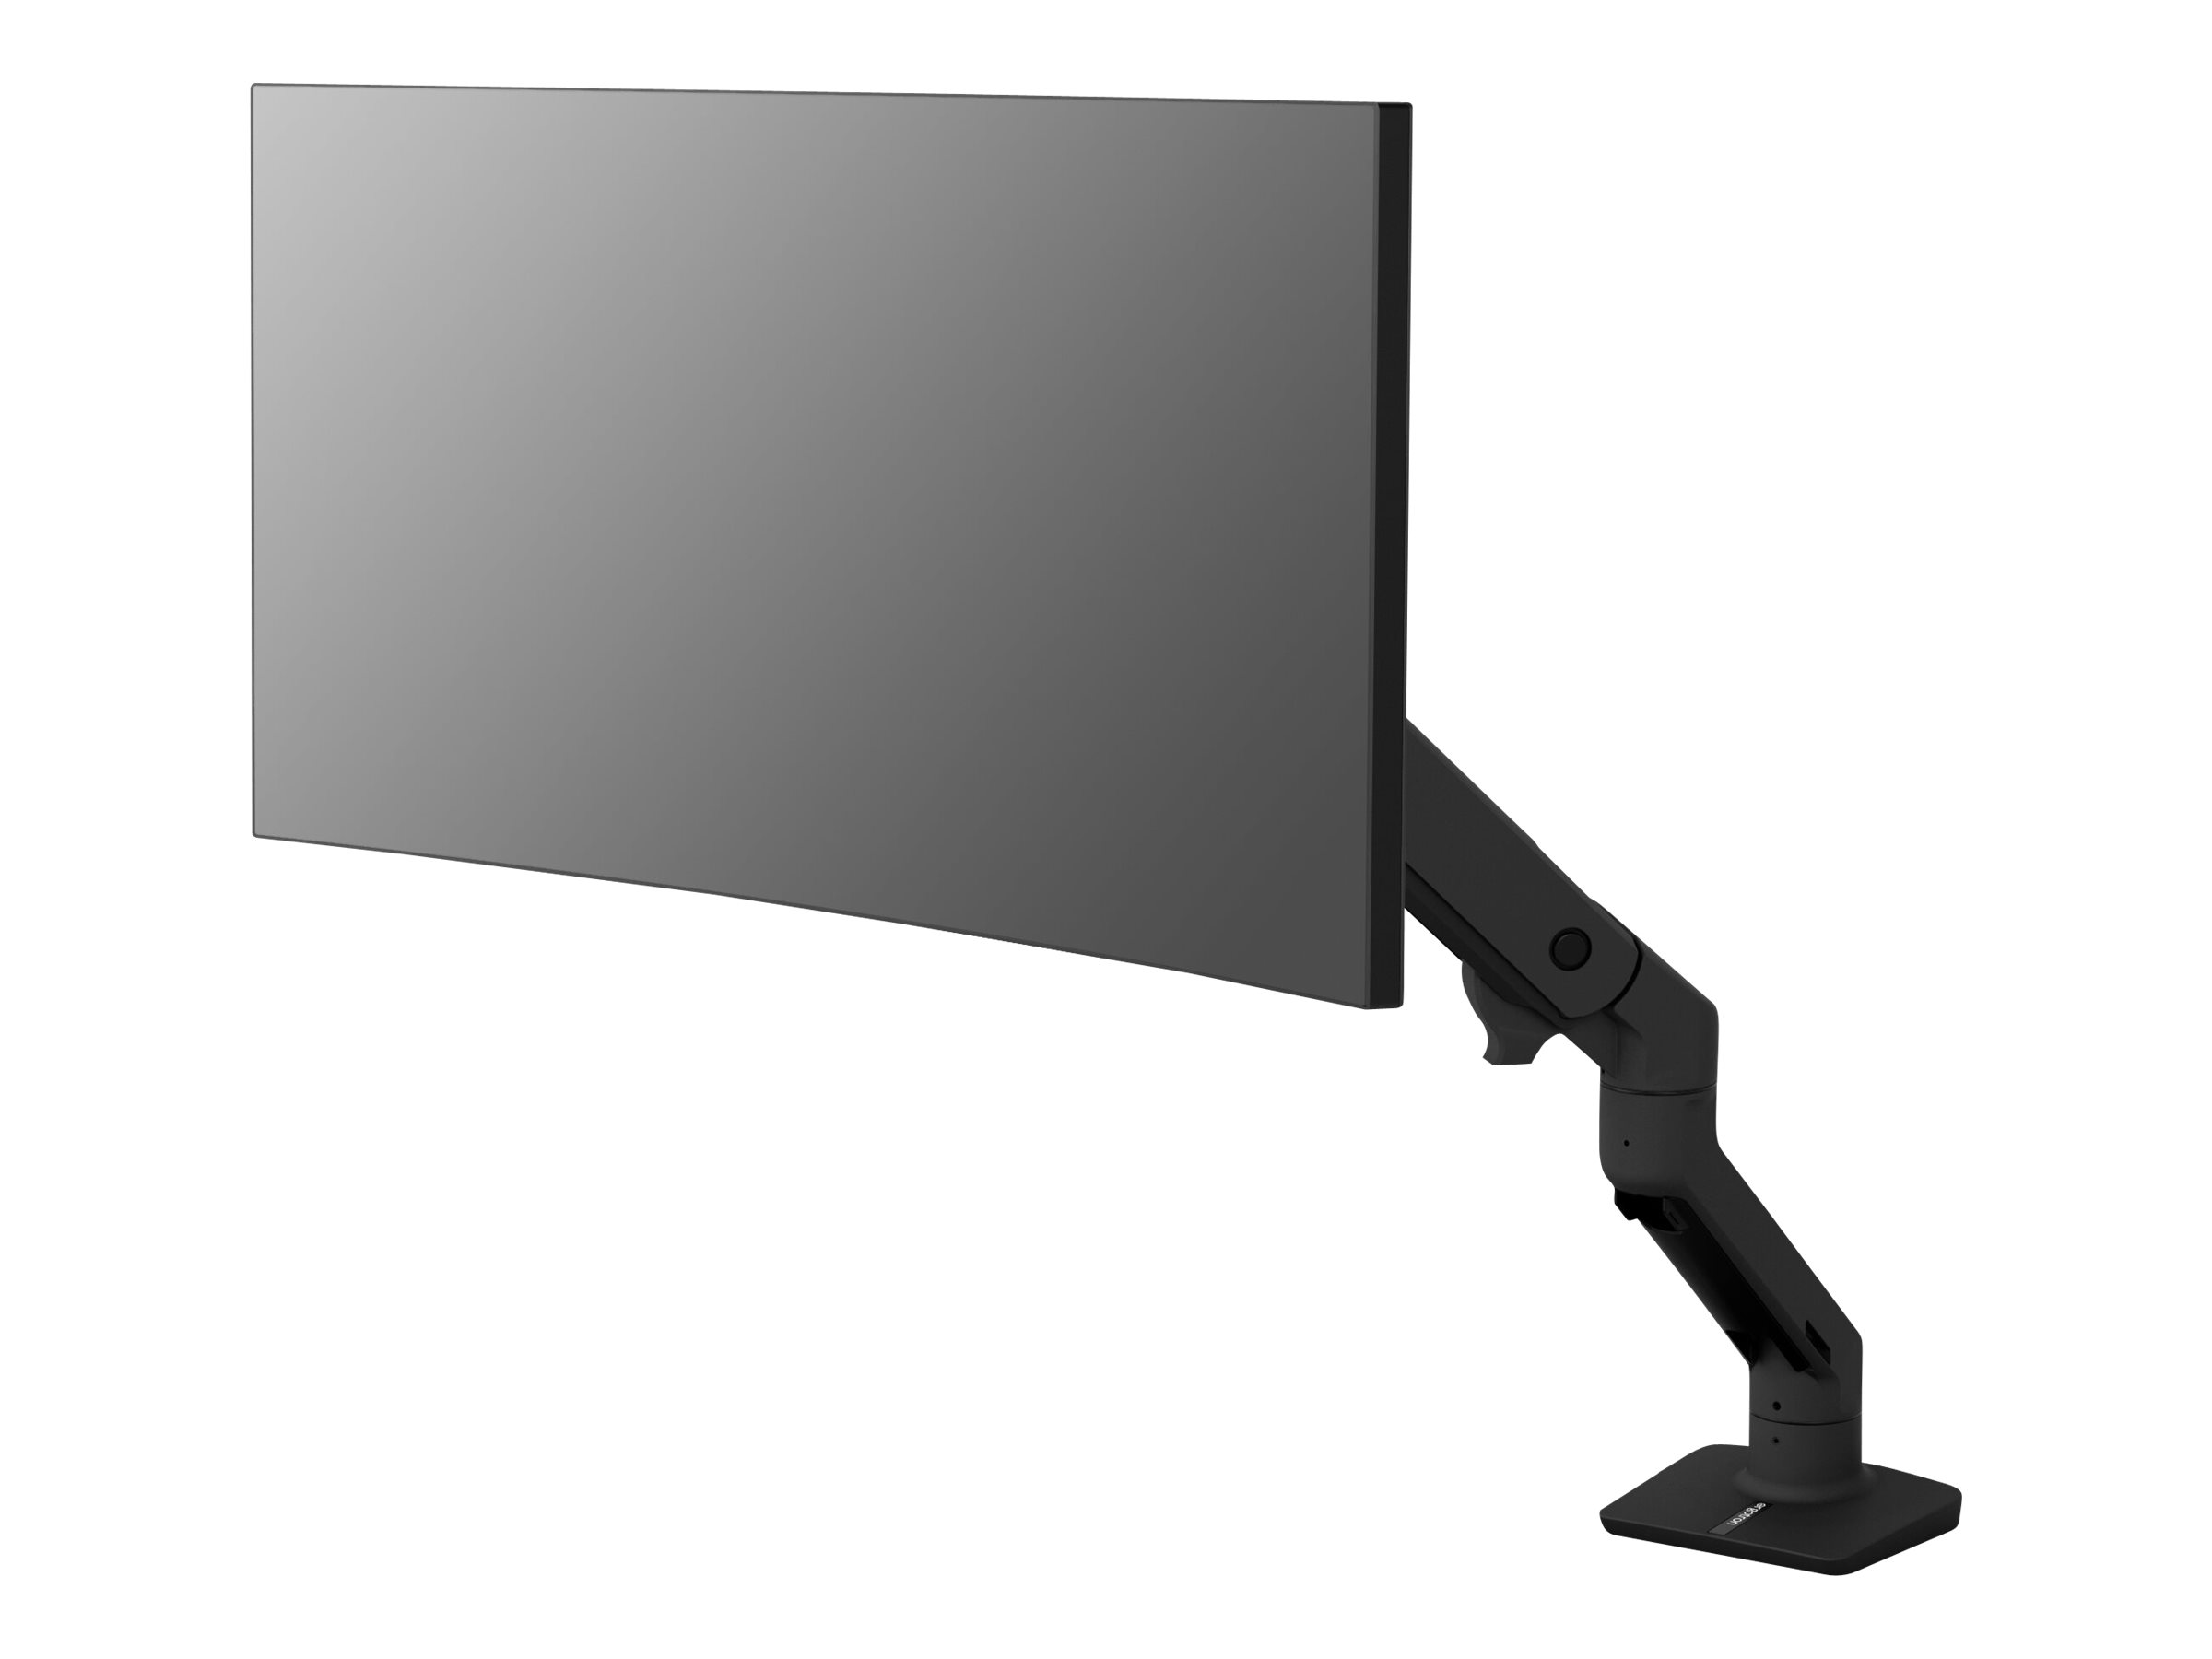 Ergotron HX - Befestigungskit (Gelenkarm, Spannbefestigung fr Tisch, Verlngerungsarm, Tischplattenbohrung, Pivot) - Patentierte Constant Force Technologie - fr LCD-Display / Curved LCD-Display - mattschwarz - Bildschirmgre: 124.5 cm (up to 49)